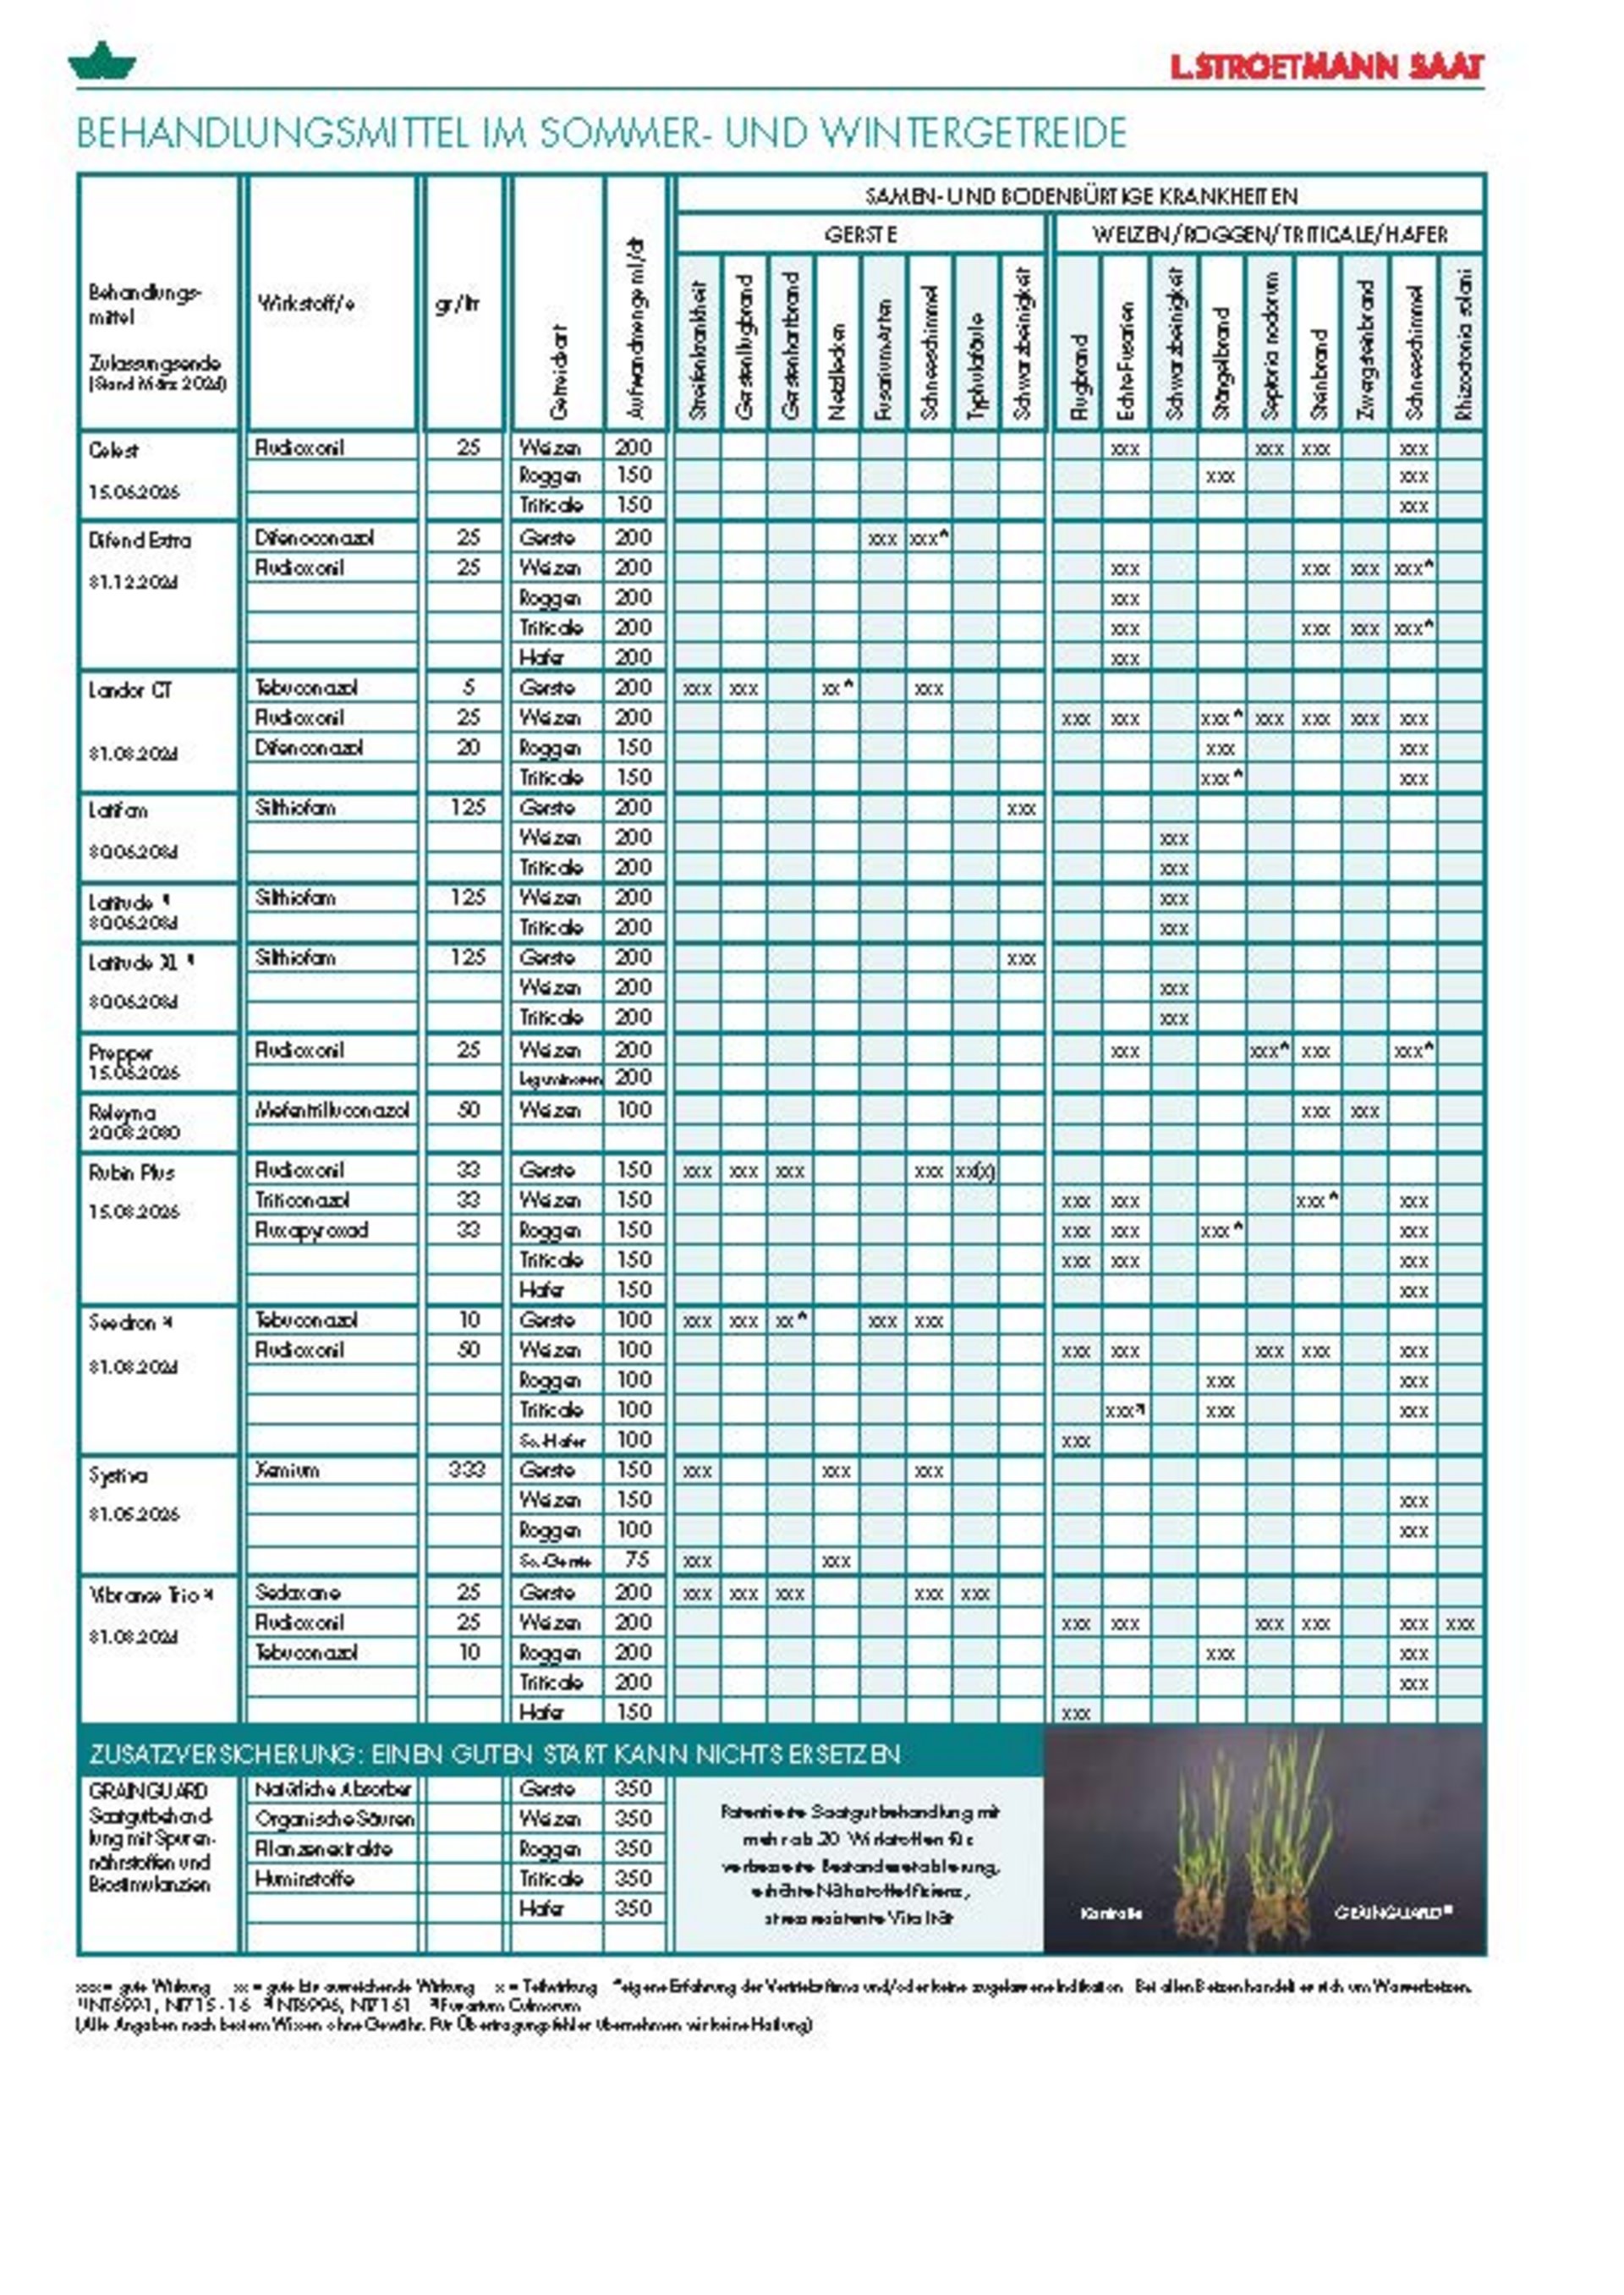 Übersicht über die aktuell zugelassenen Behandlungsmittel für Sommer- und Wintergetreide für Getreidesorten von L. Stroetmann Saat